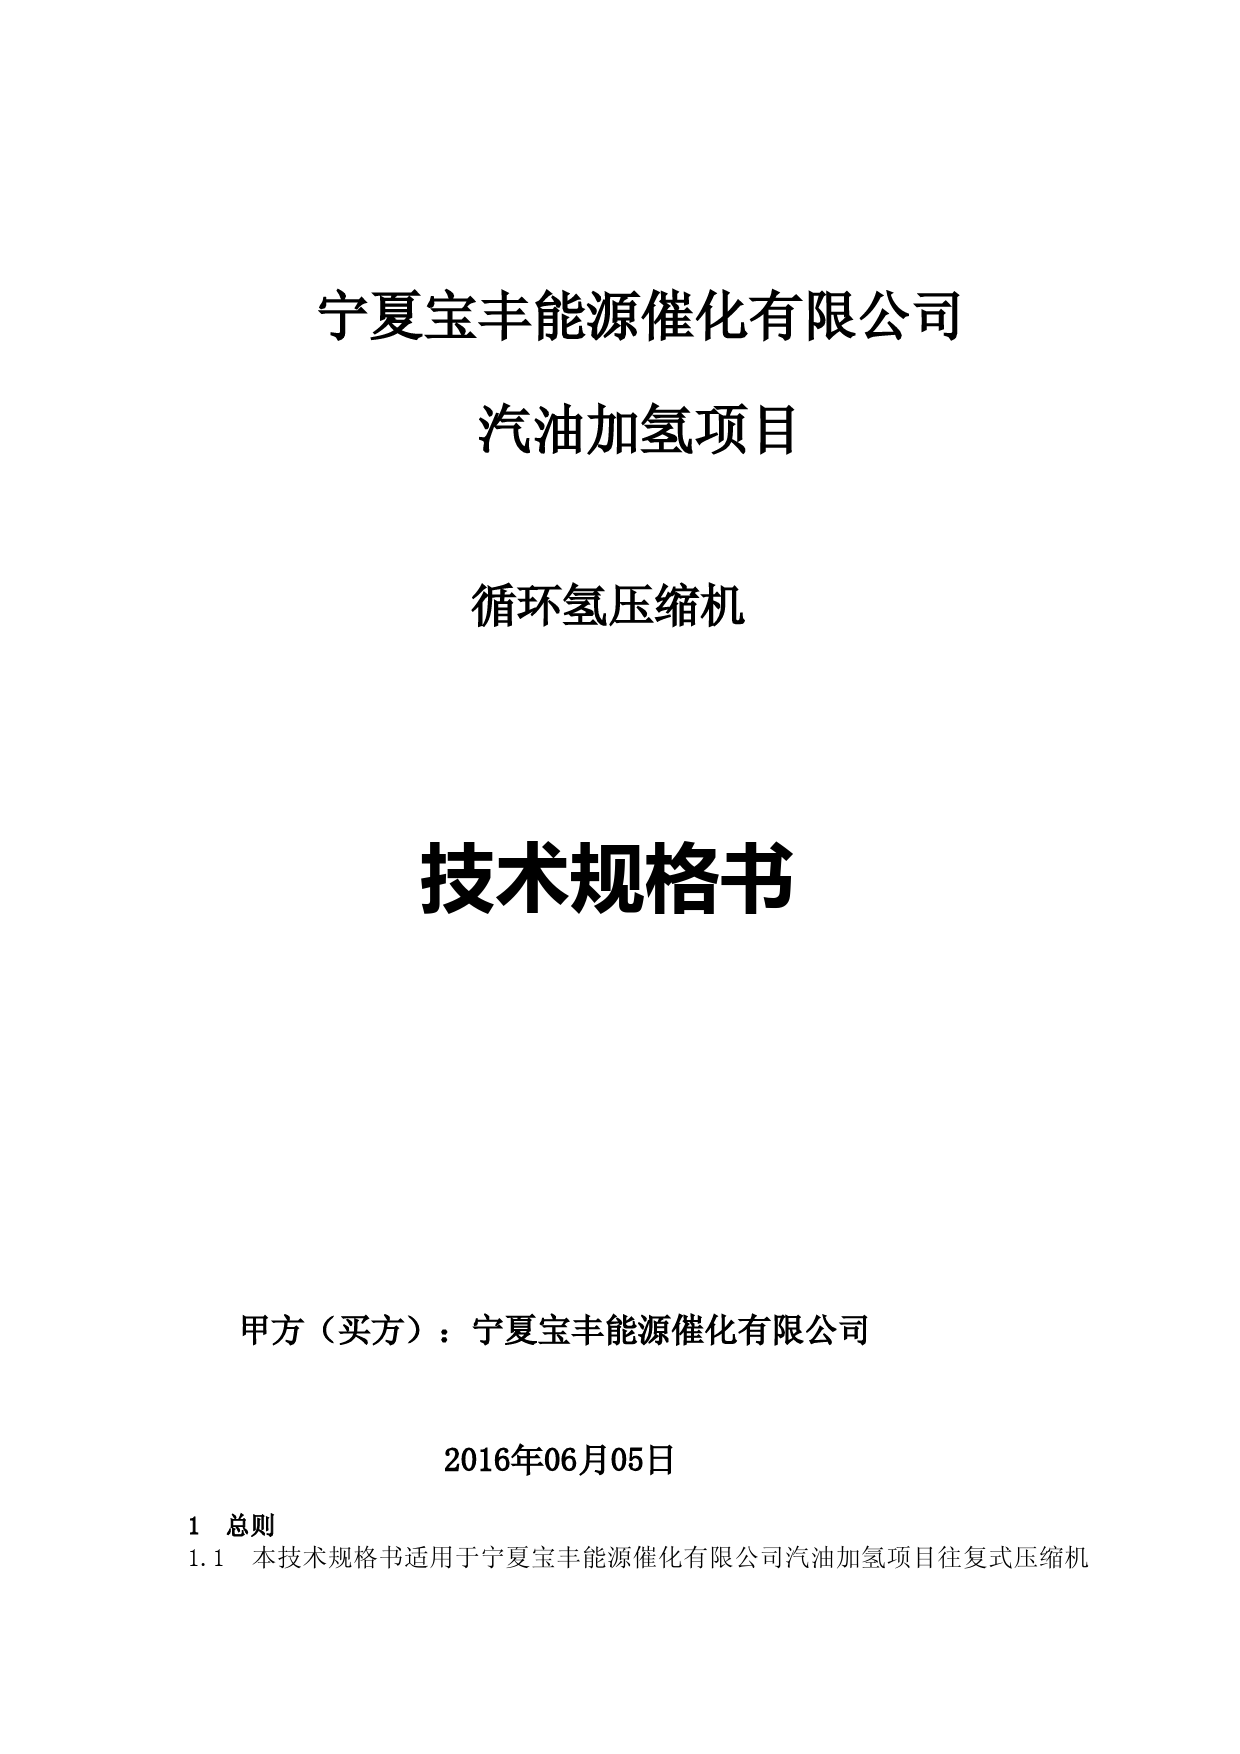 循环氢压缩机技术规格书 (1)